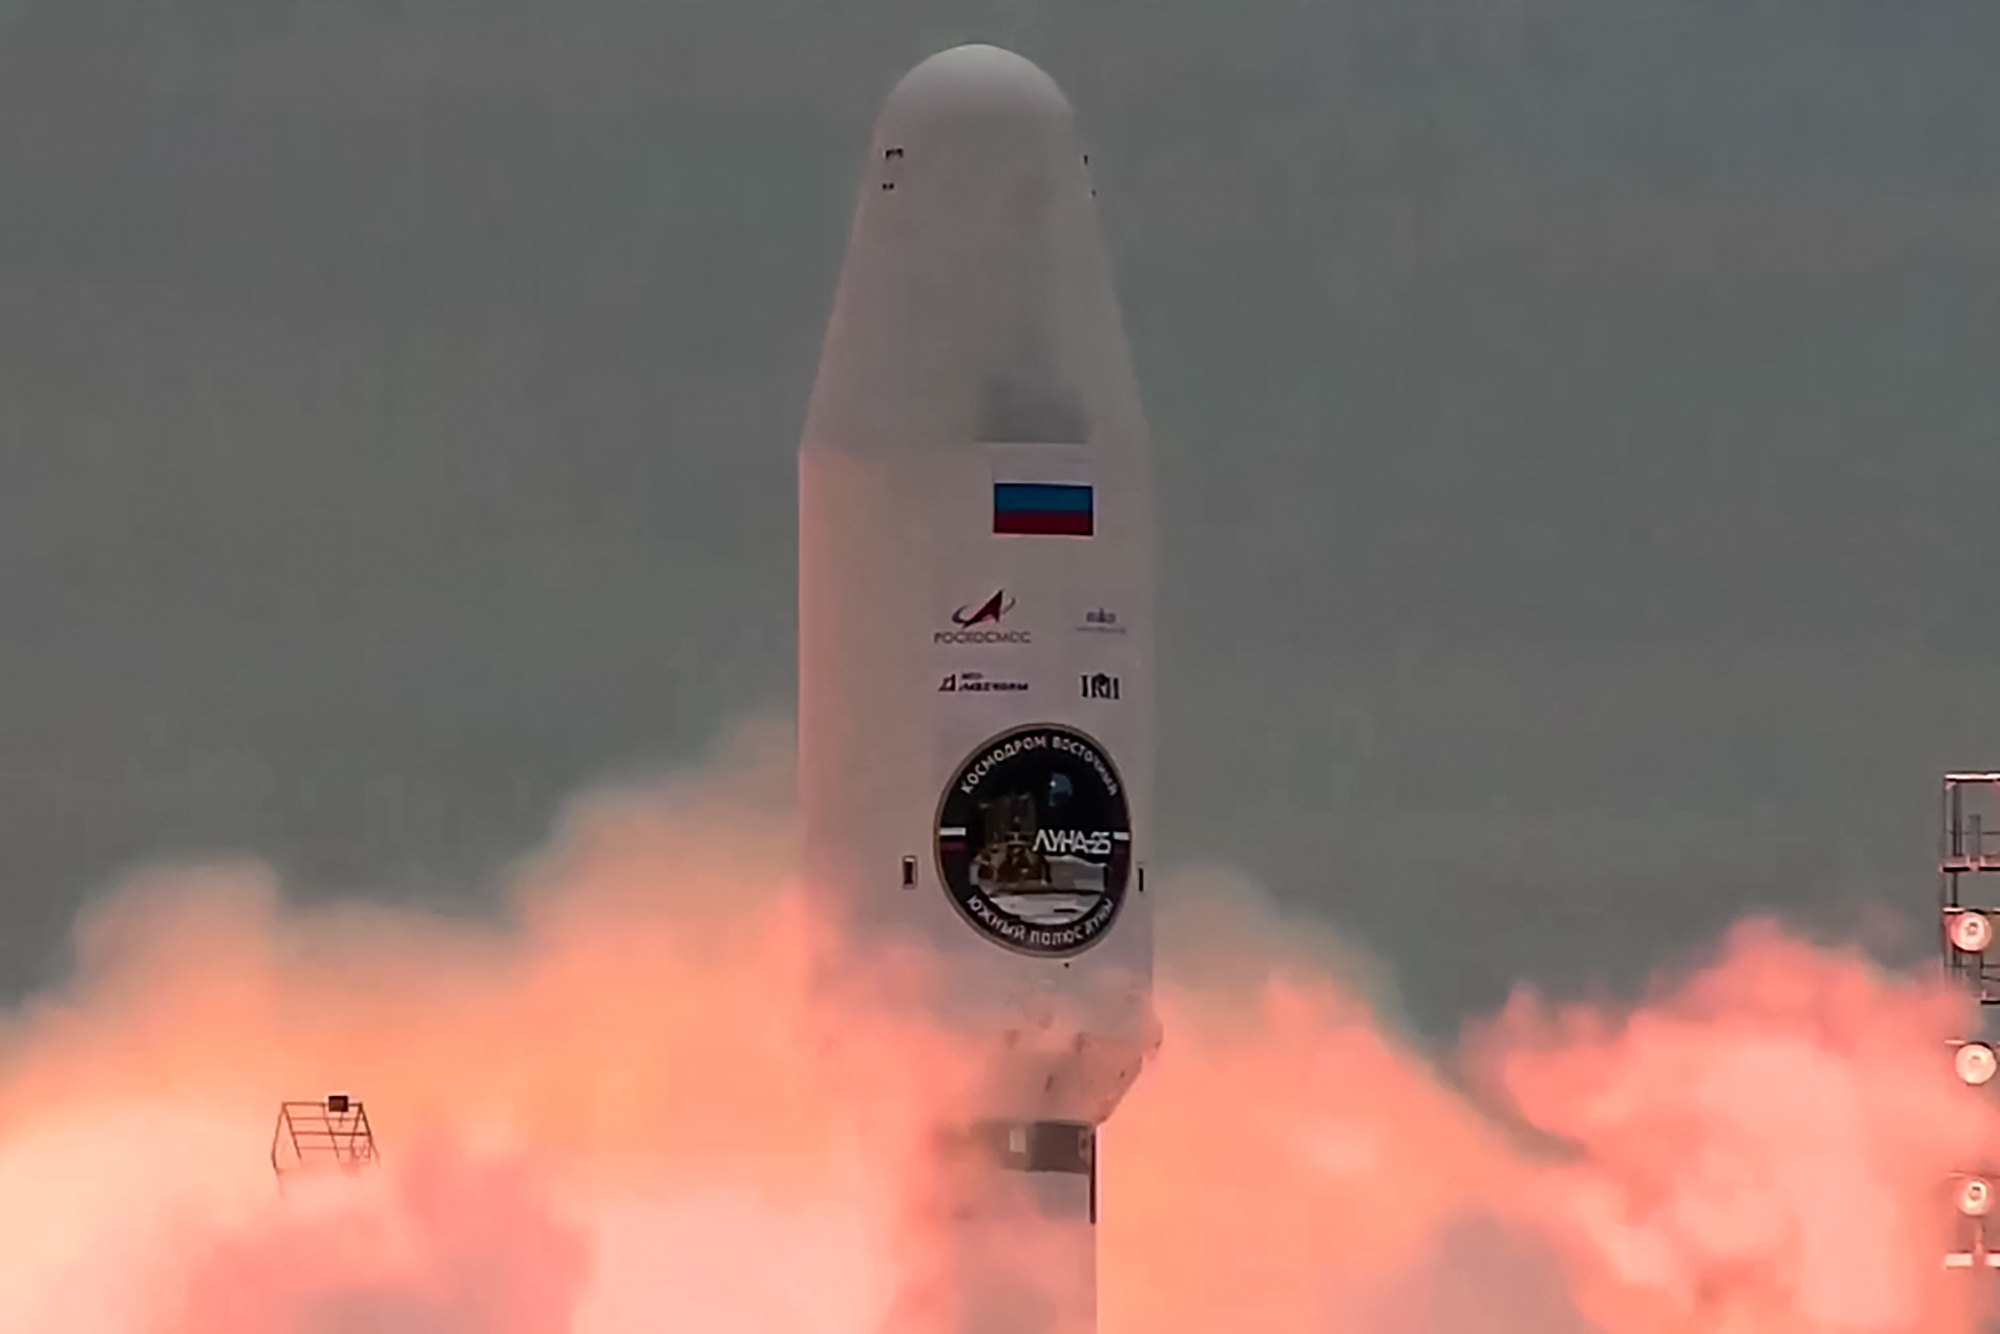 Εκτοξεύτηκε ρωσικός πύραυλος με προορισμό τη Σελήνη